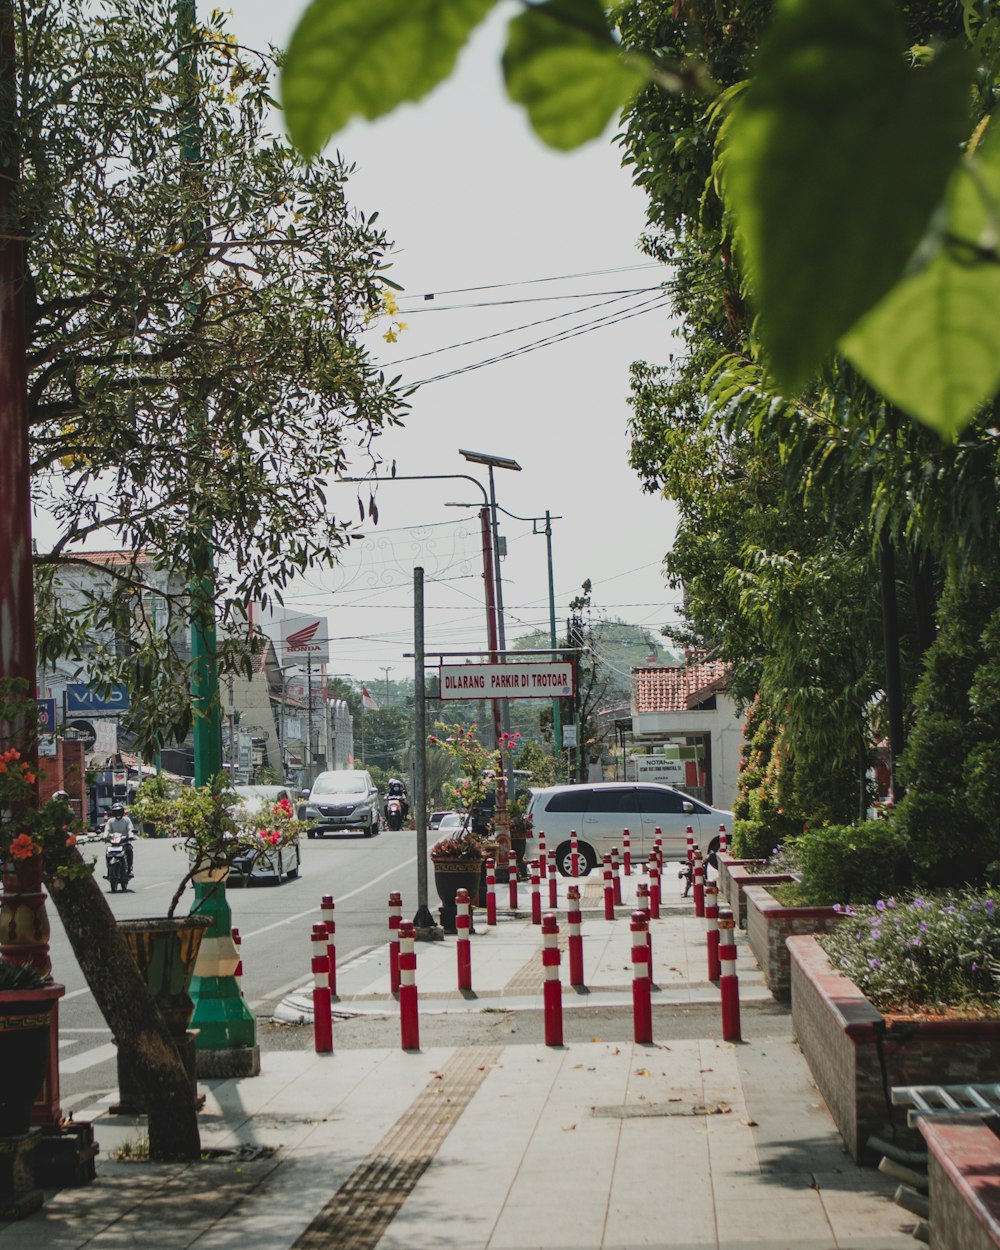 Une rue de la ville avec des cônes rouges et blancs sur le trottoir